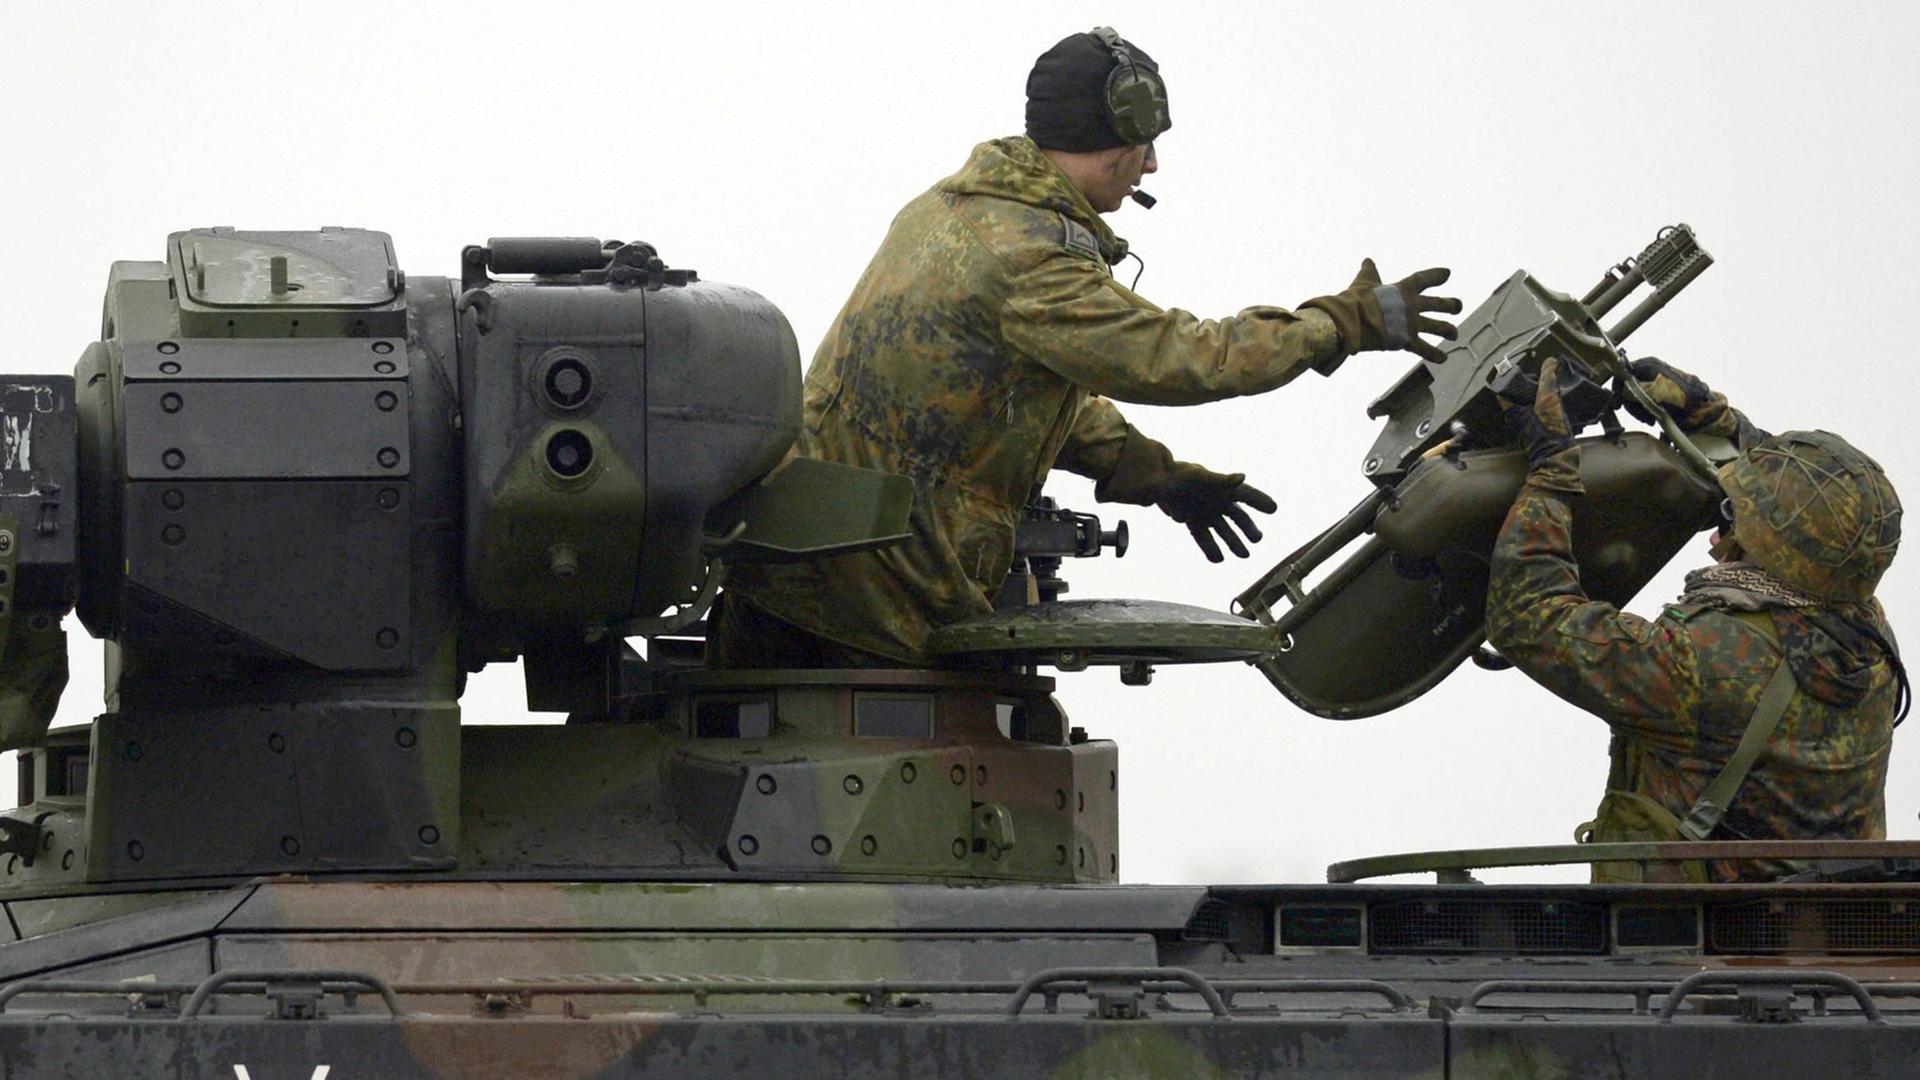 Zu sehen ist ein Panzer mit zwei Soldaten und Teilen für einen Raketen-Werfer.